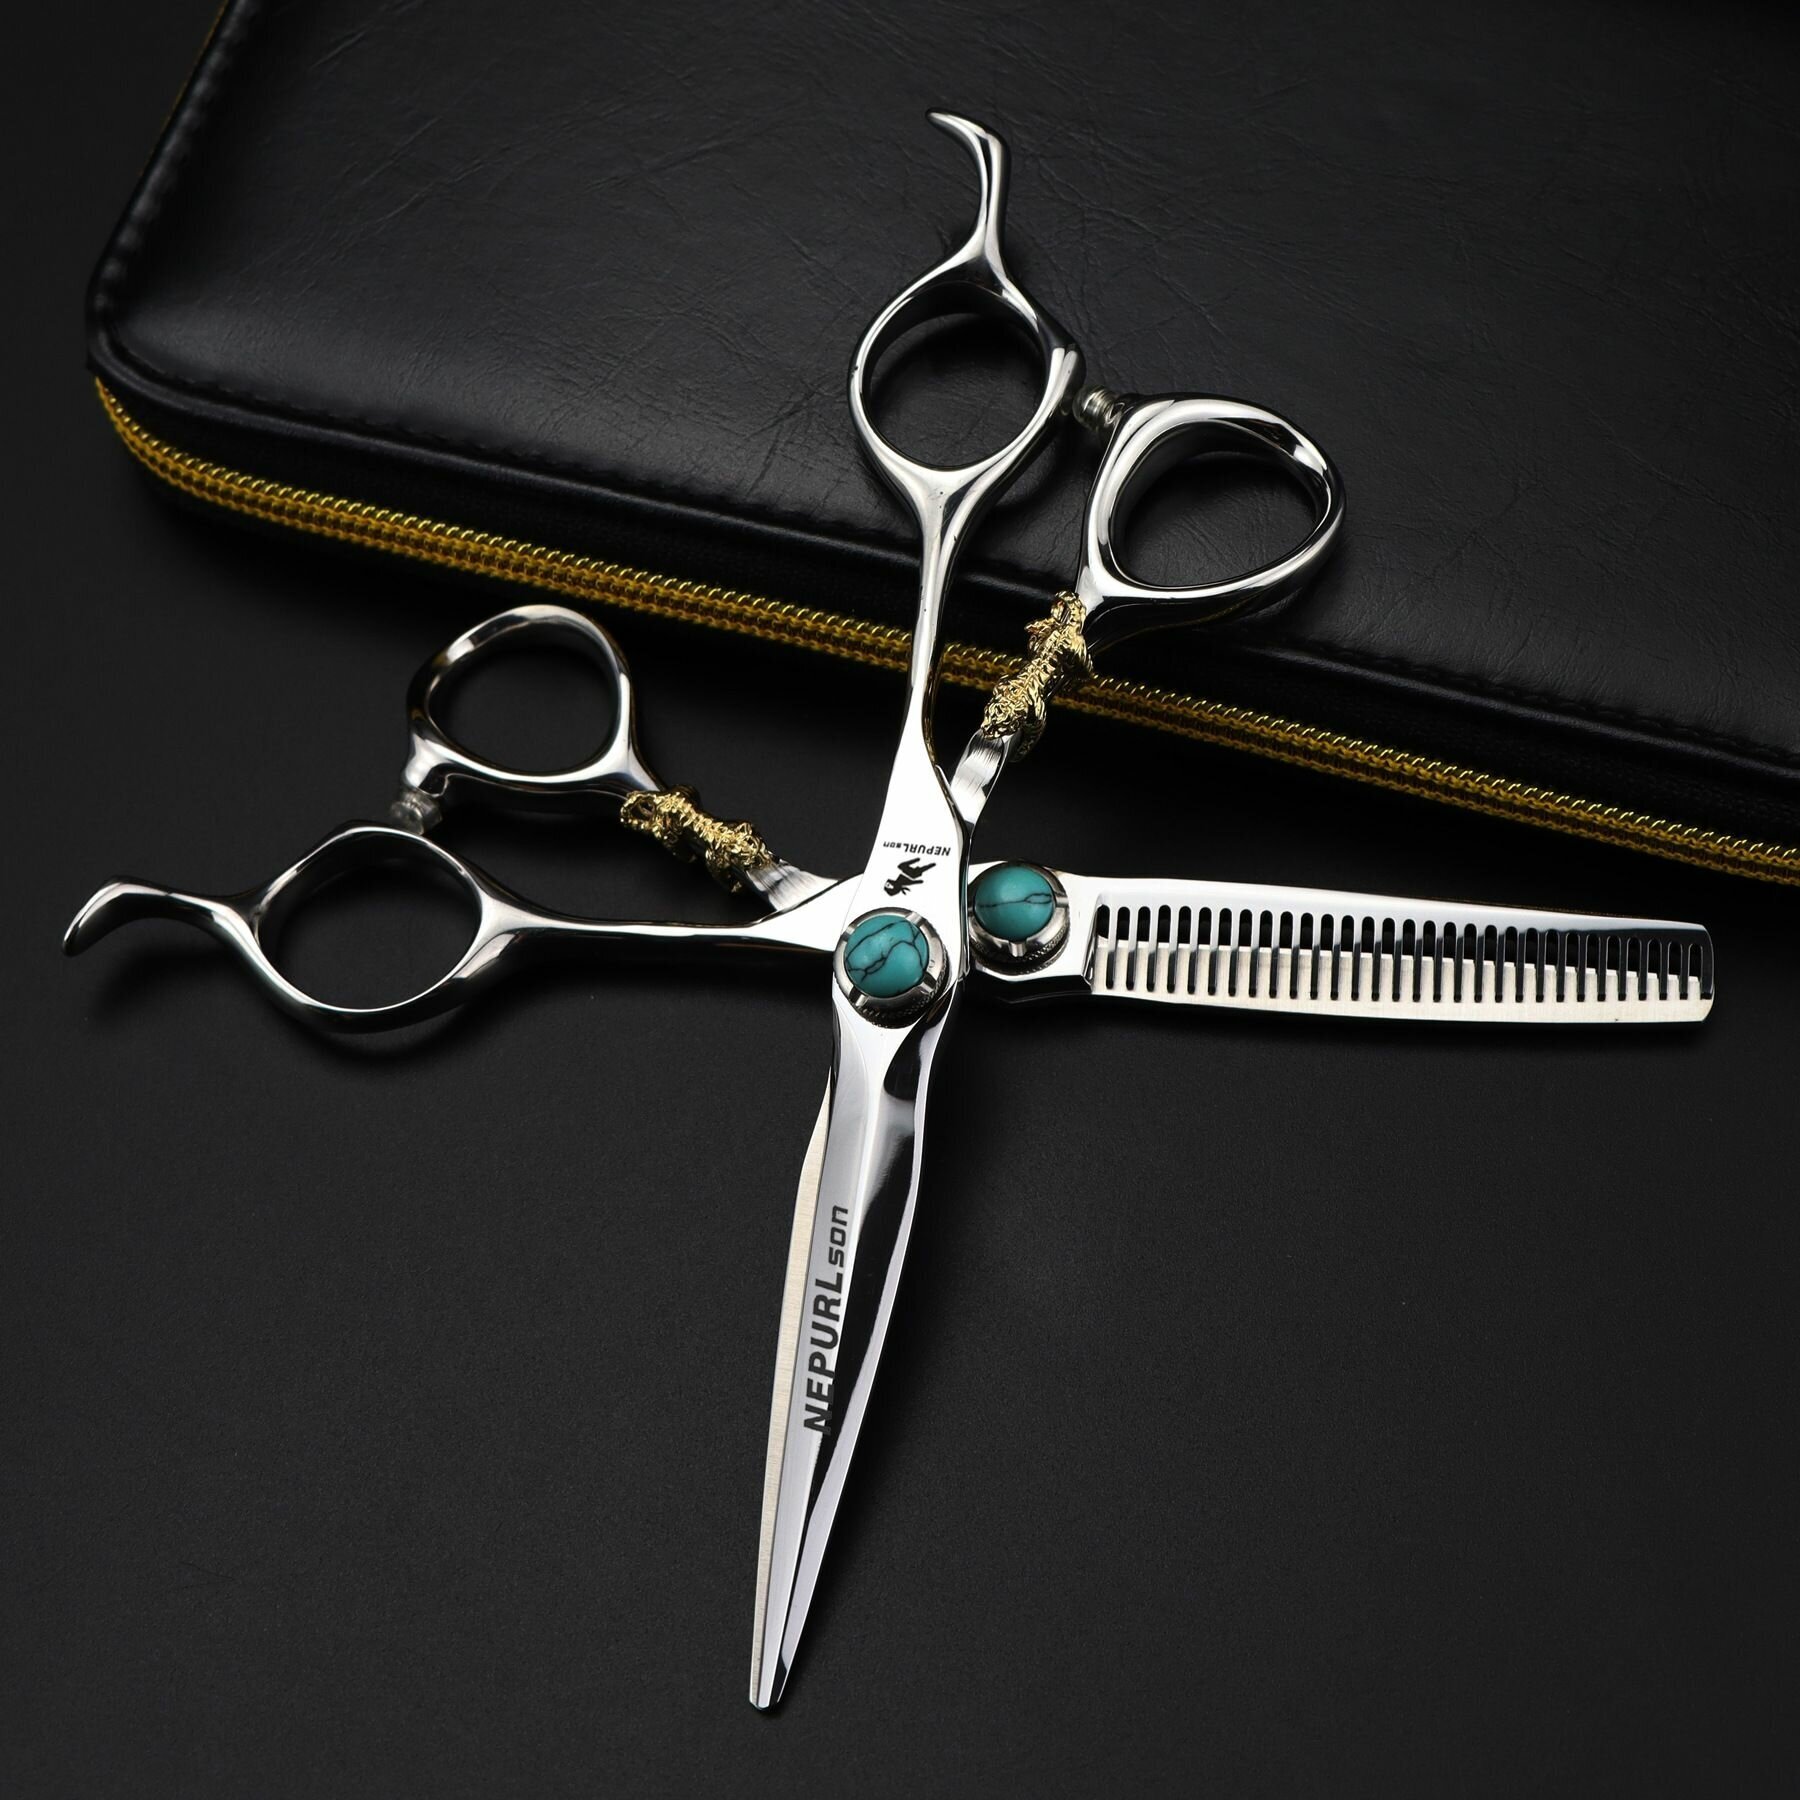 Набор парикмахерских профессиональных ножниц для филировки и стрижки. Малахит. Размер 6.0